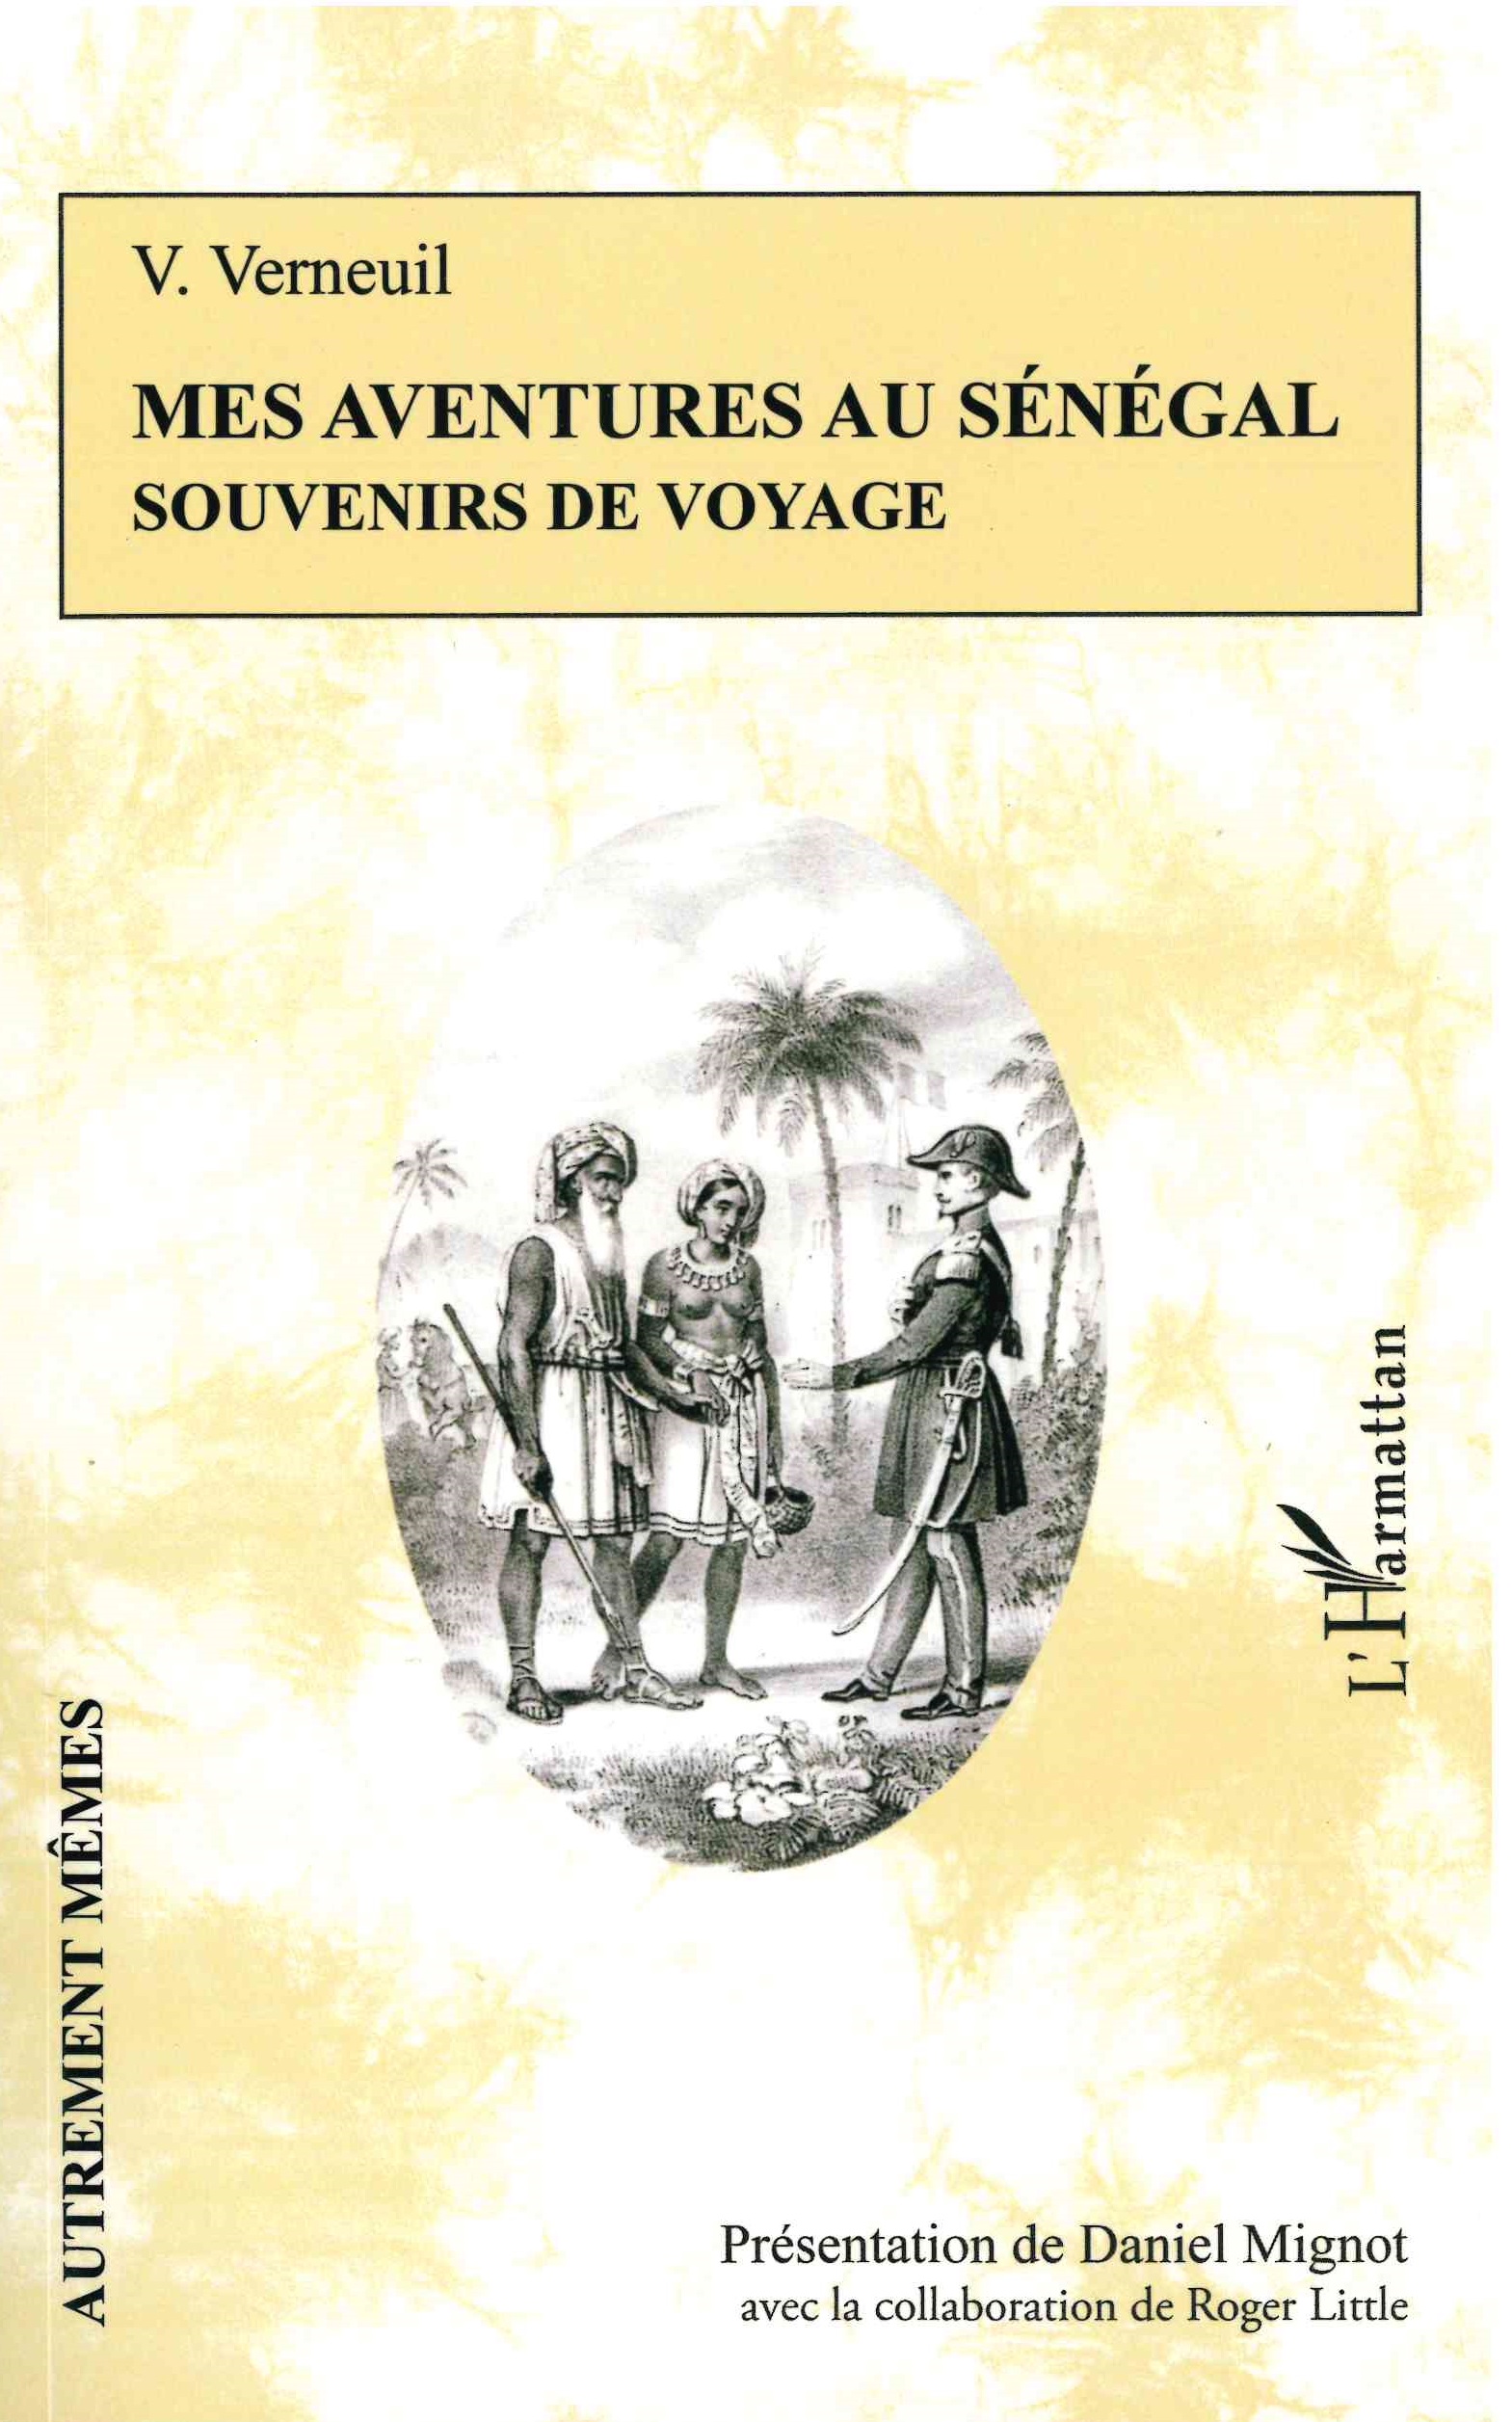 Verneuil (Victor), Mes aventures au Sénégal : souvenirs de voyage